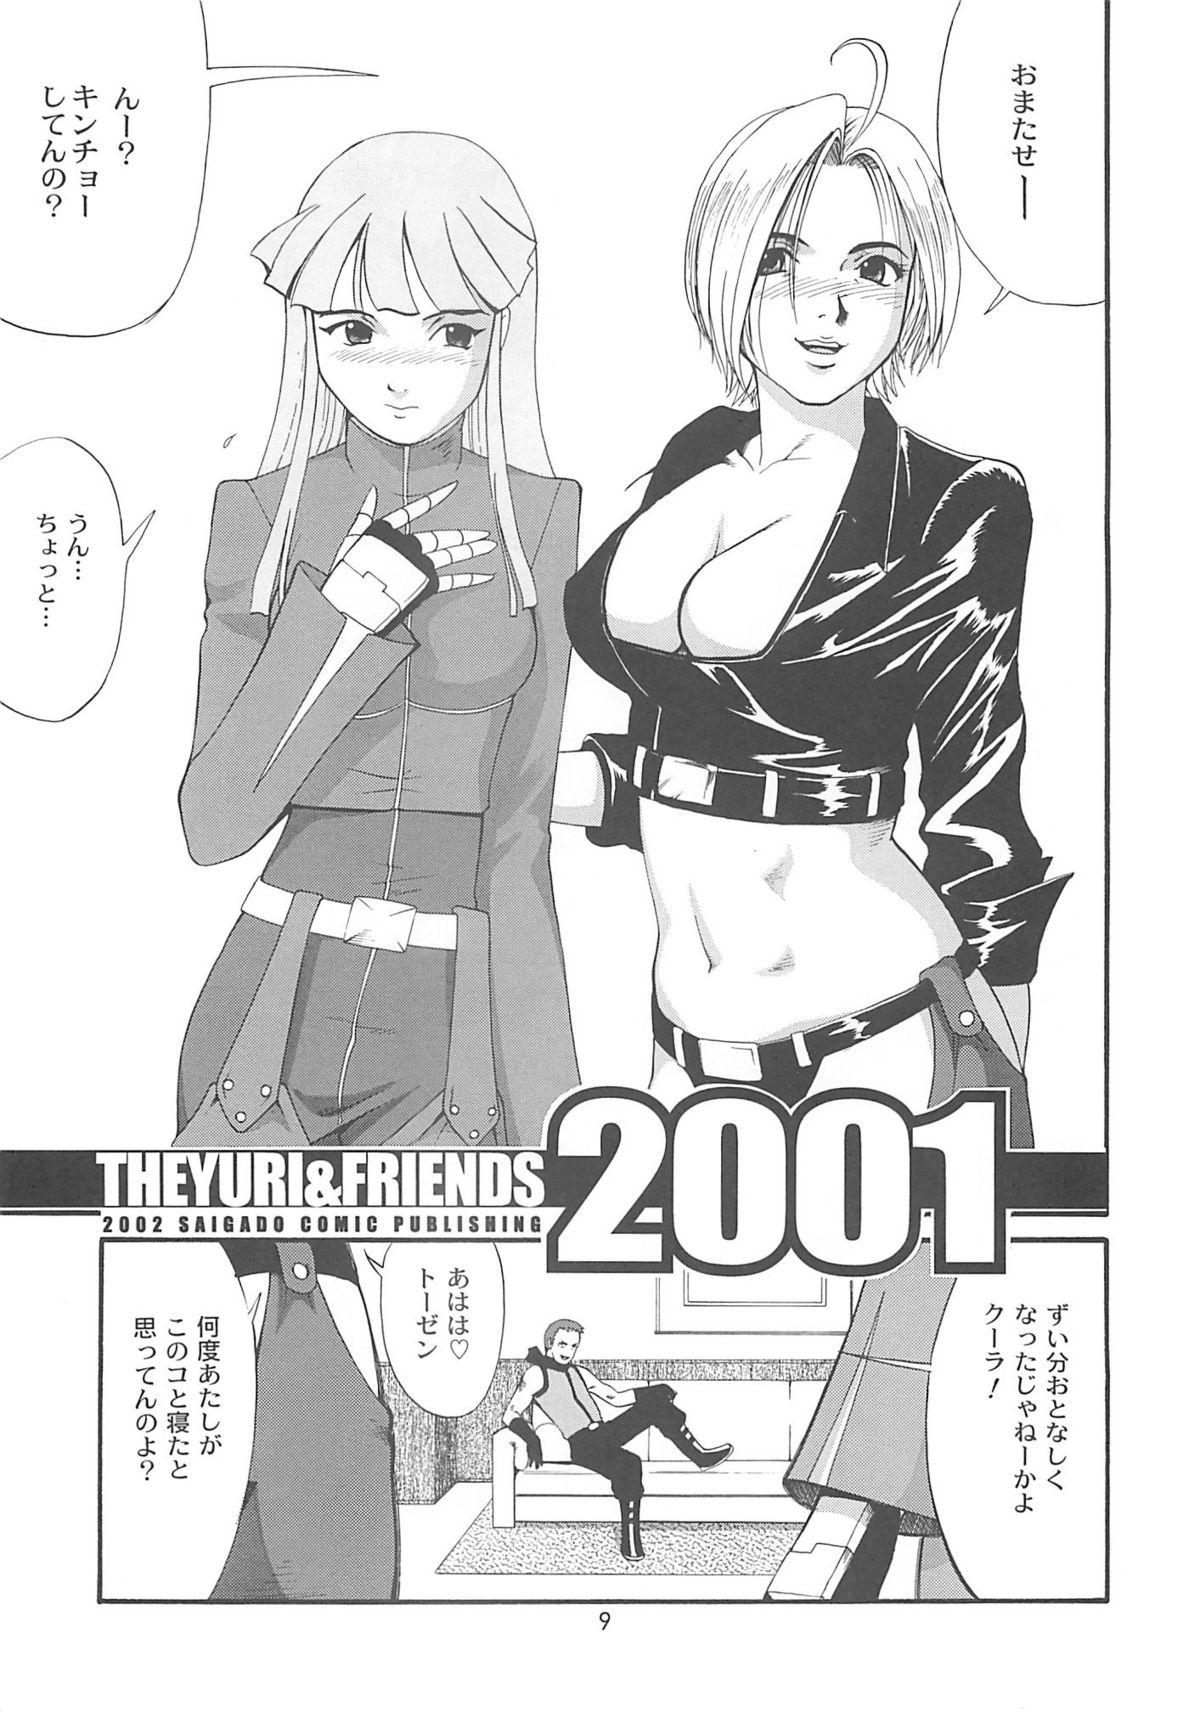 The Yuri & Friends 2001 7